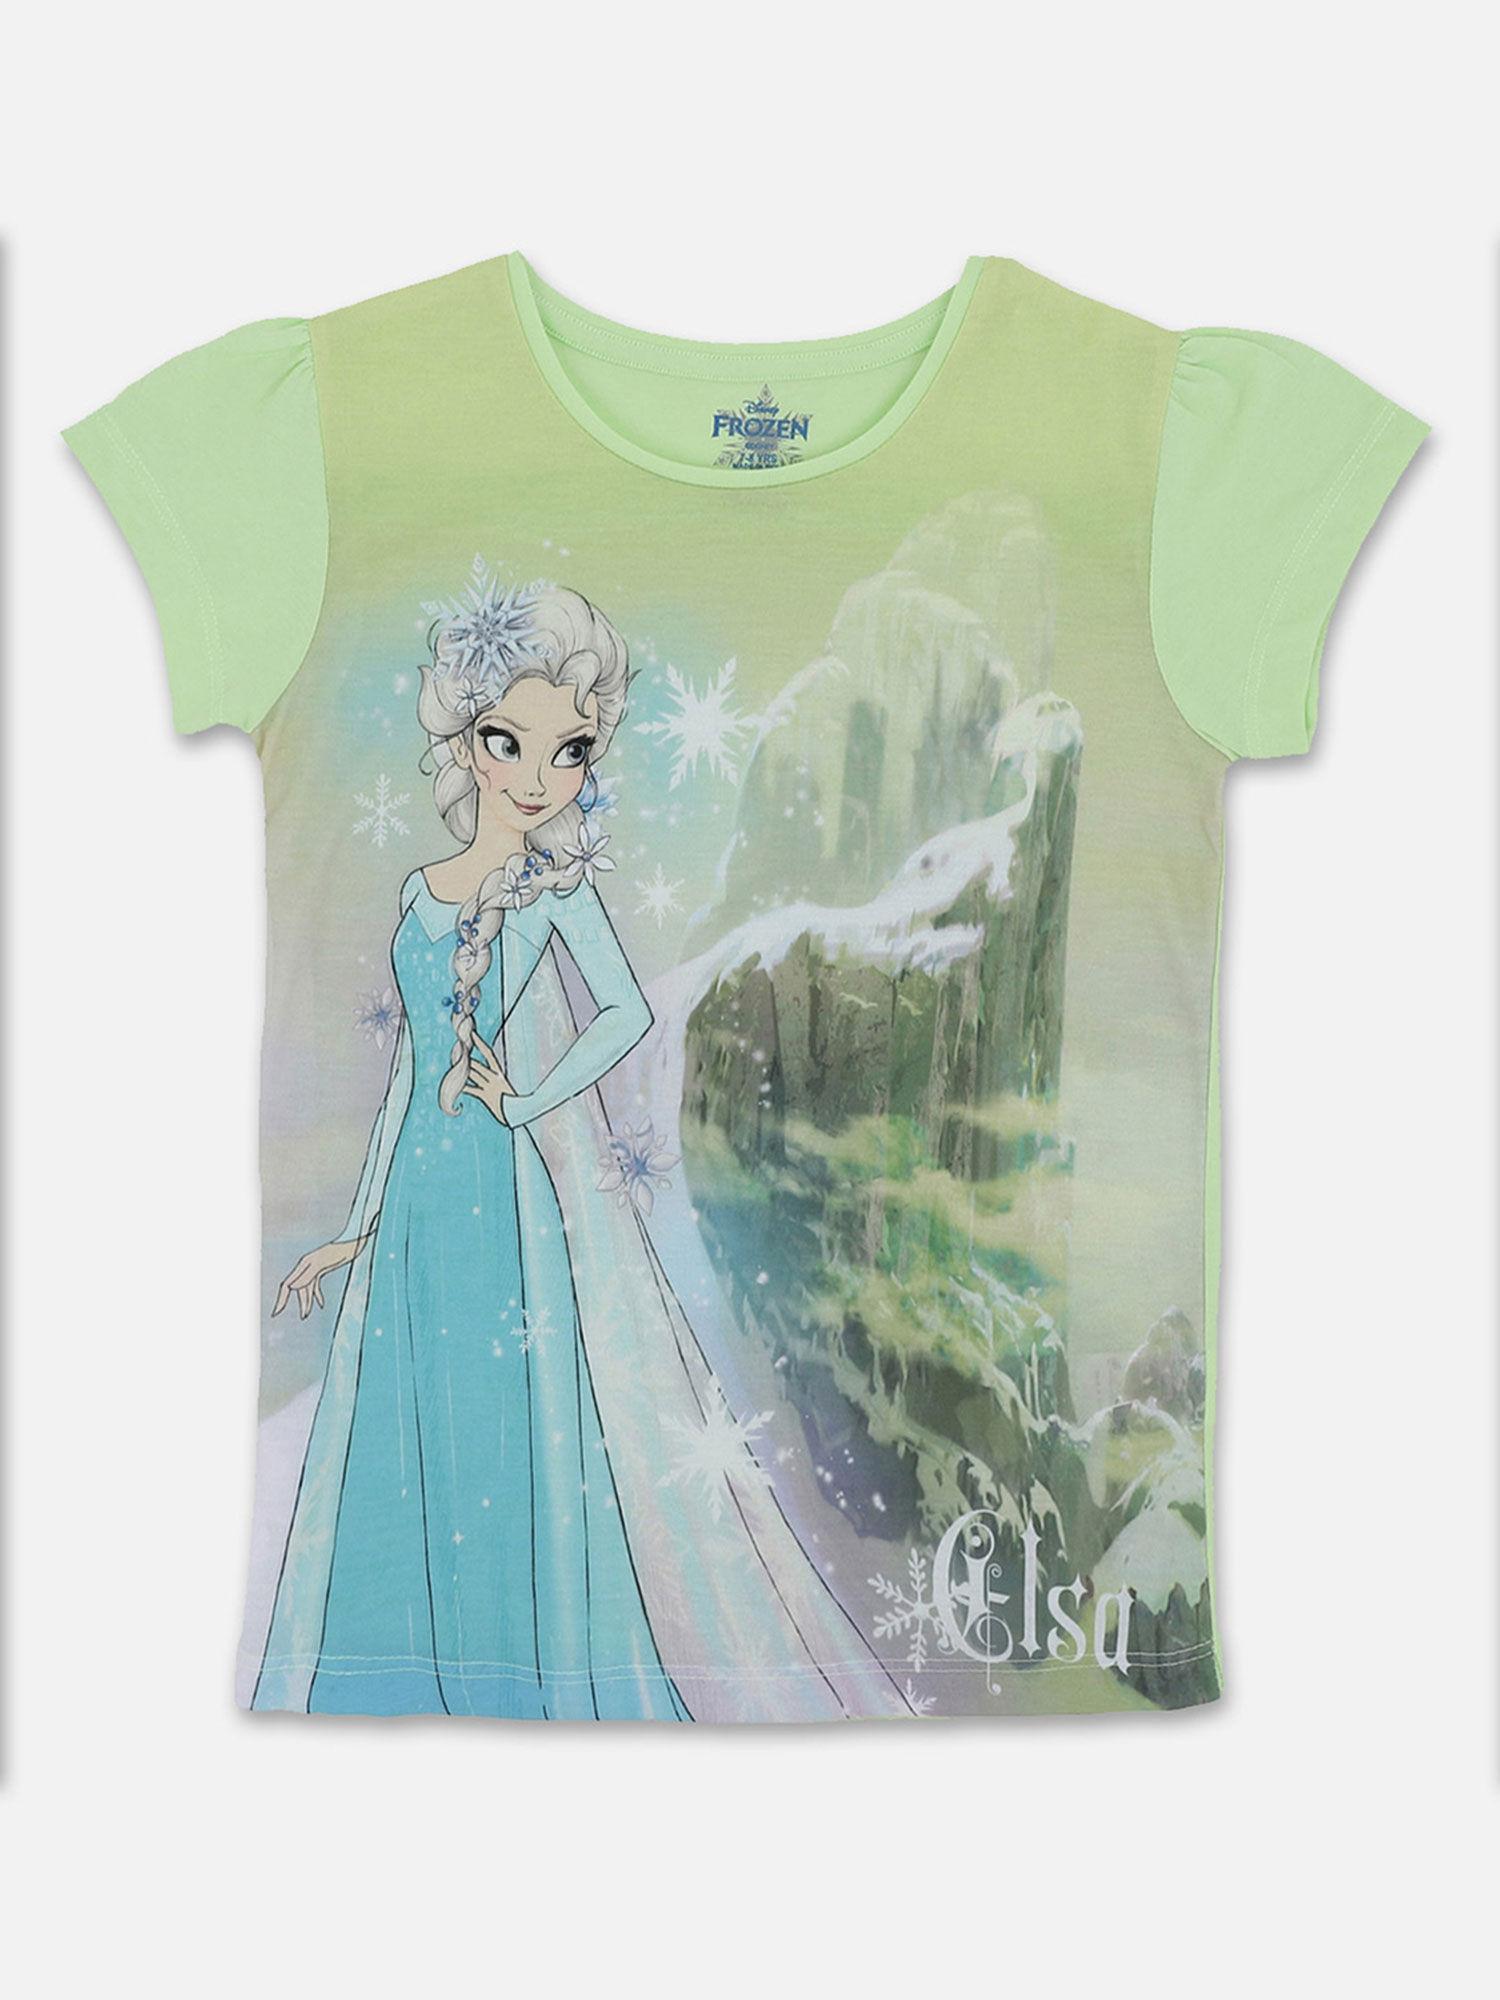 frozen featured t-shirt for girls